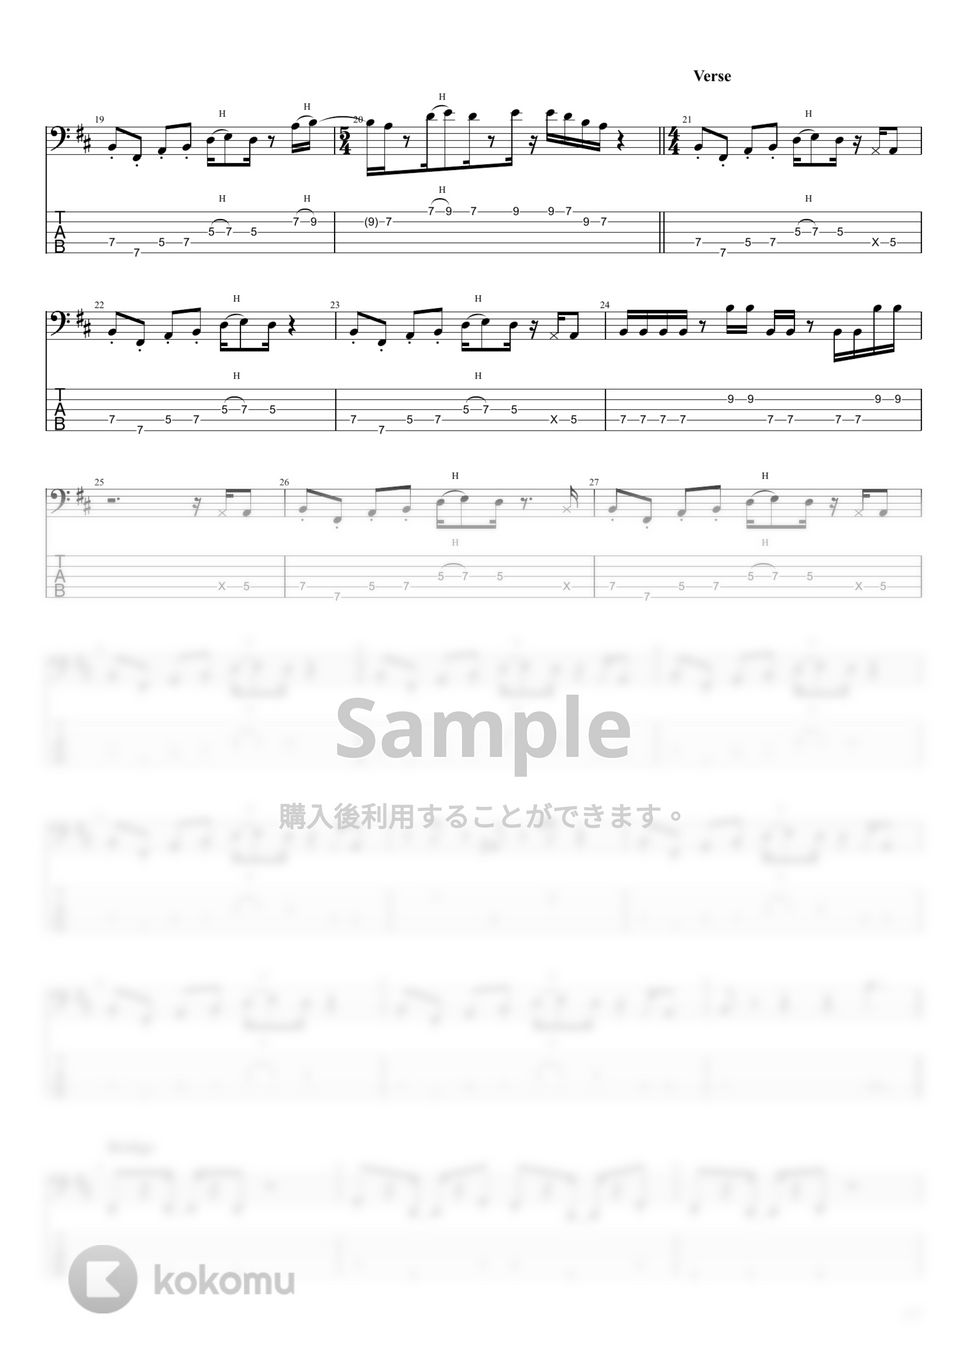 ニガミ１７才 - ただし、BGM (5弦) by まっきん